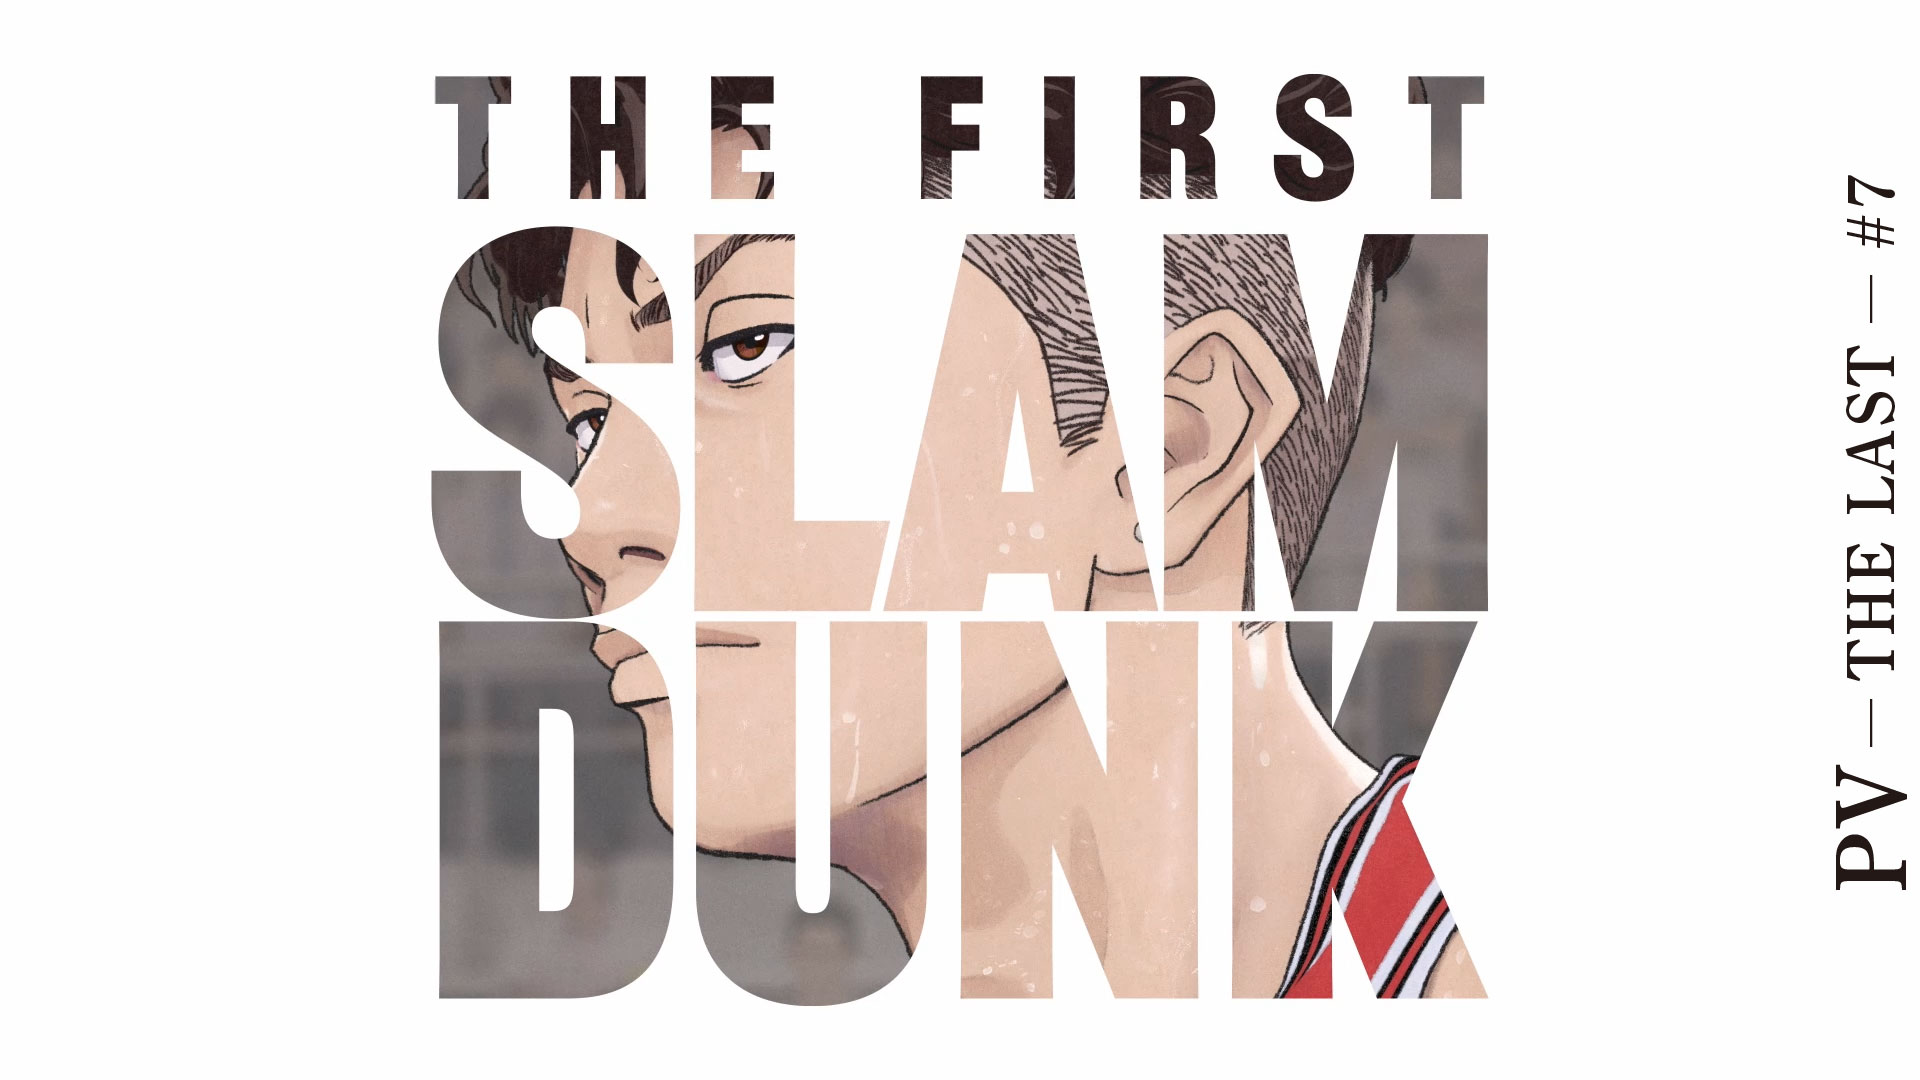 映画『THE FIRST SLAM DUNK』